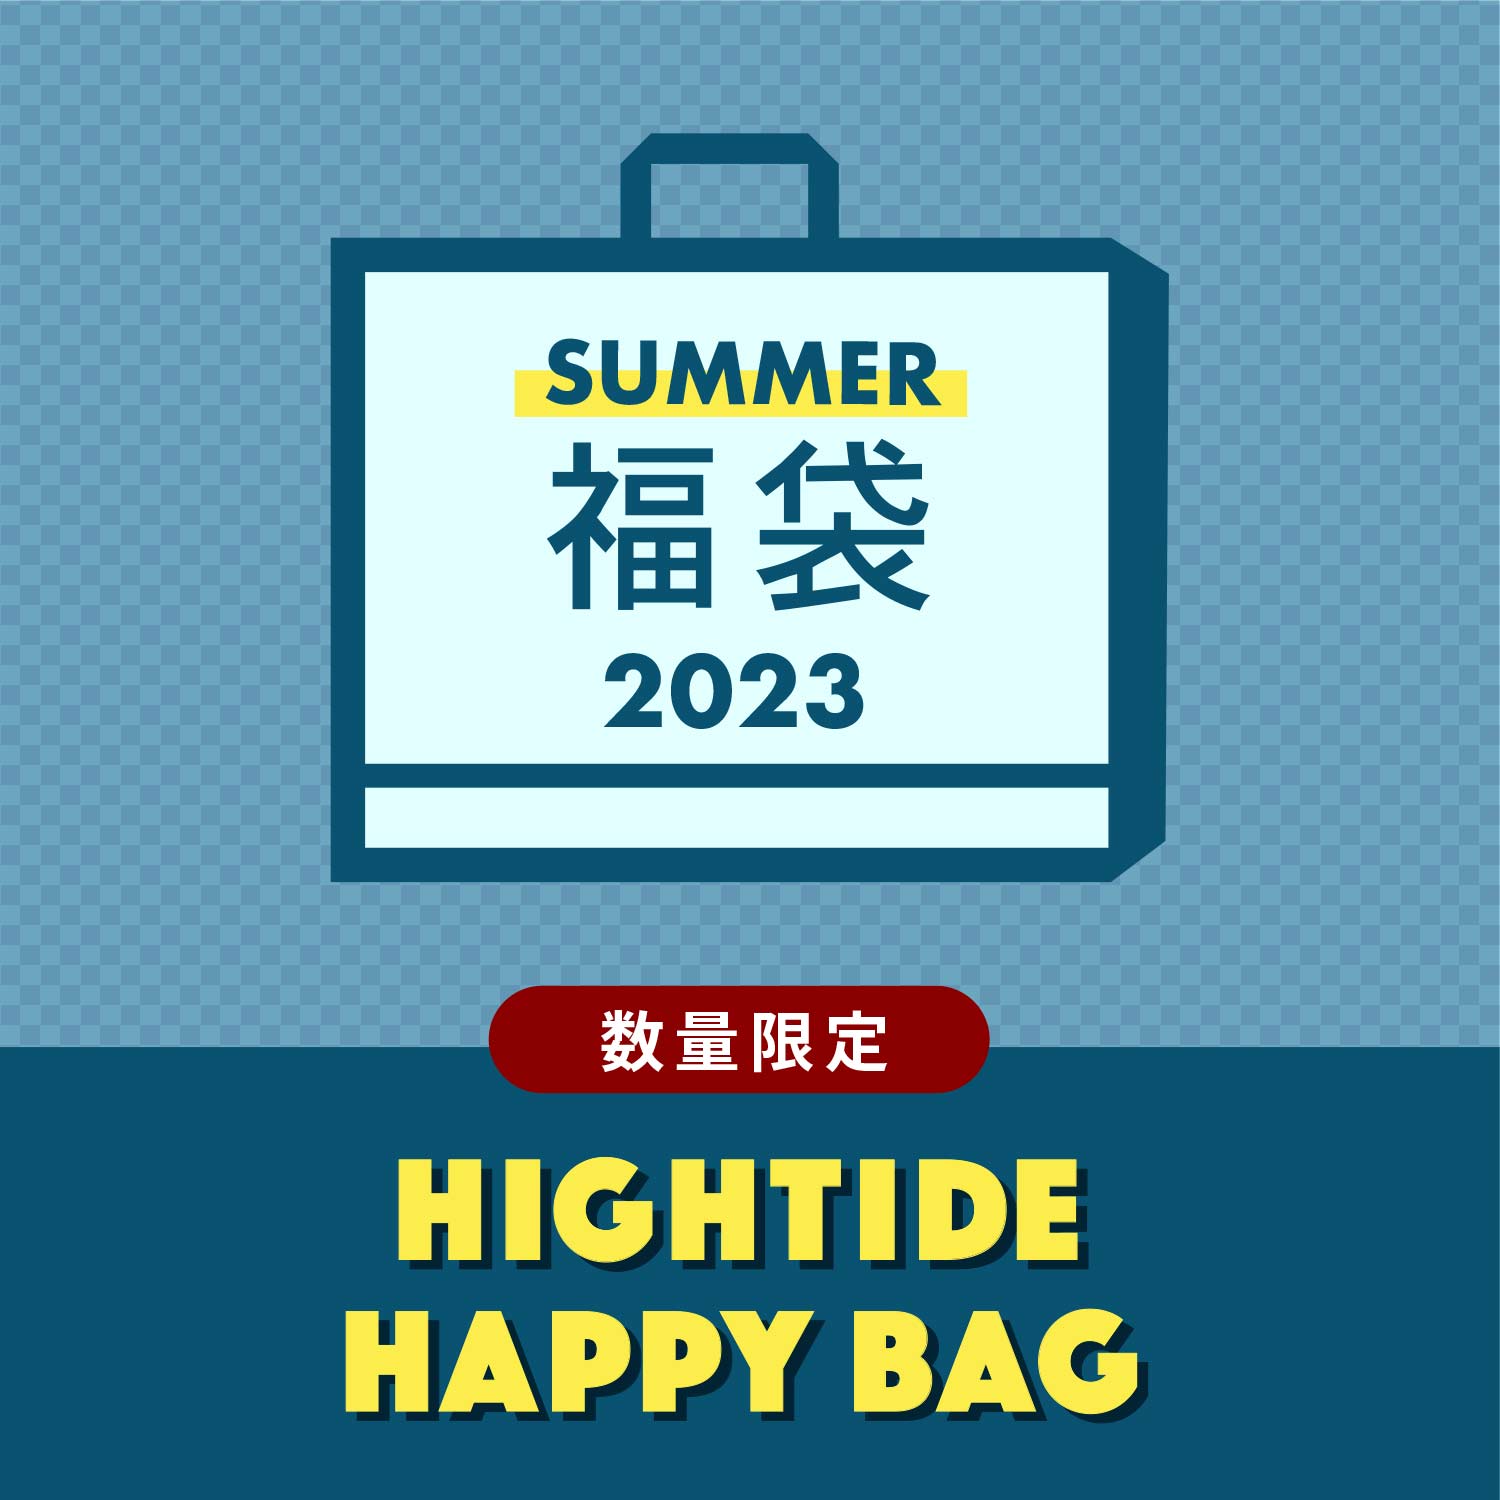 HAPPY BAG 夏福袋 2023 雑貨 ステーショナリー 文房具 ハイタイド HIGHTIDE レディース メンズ